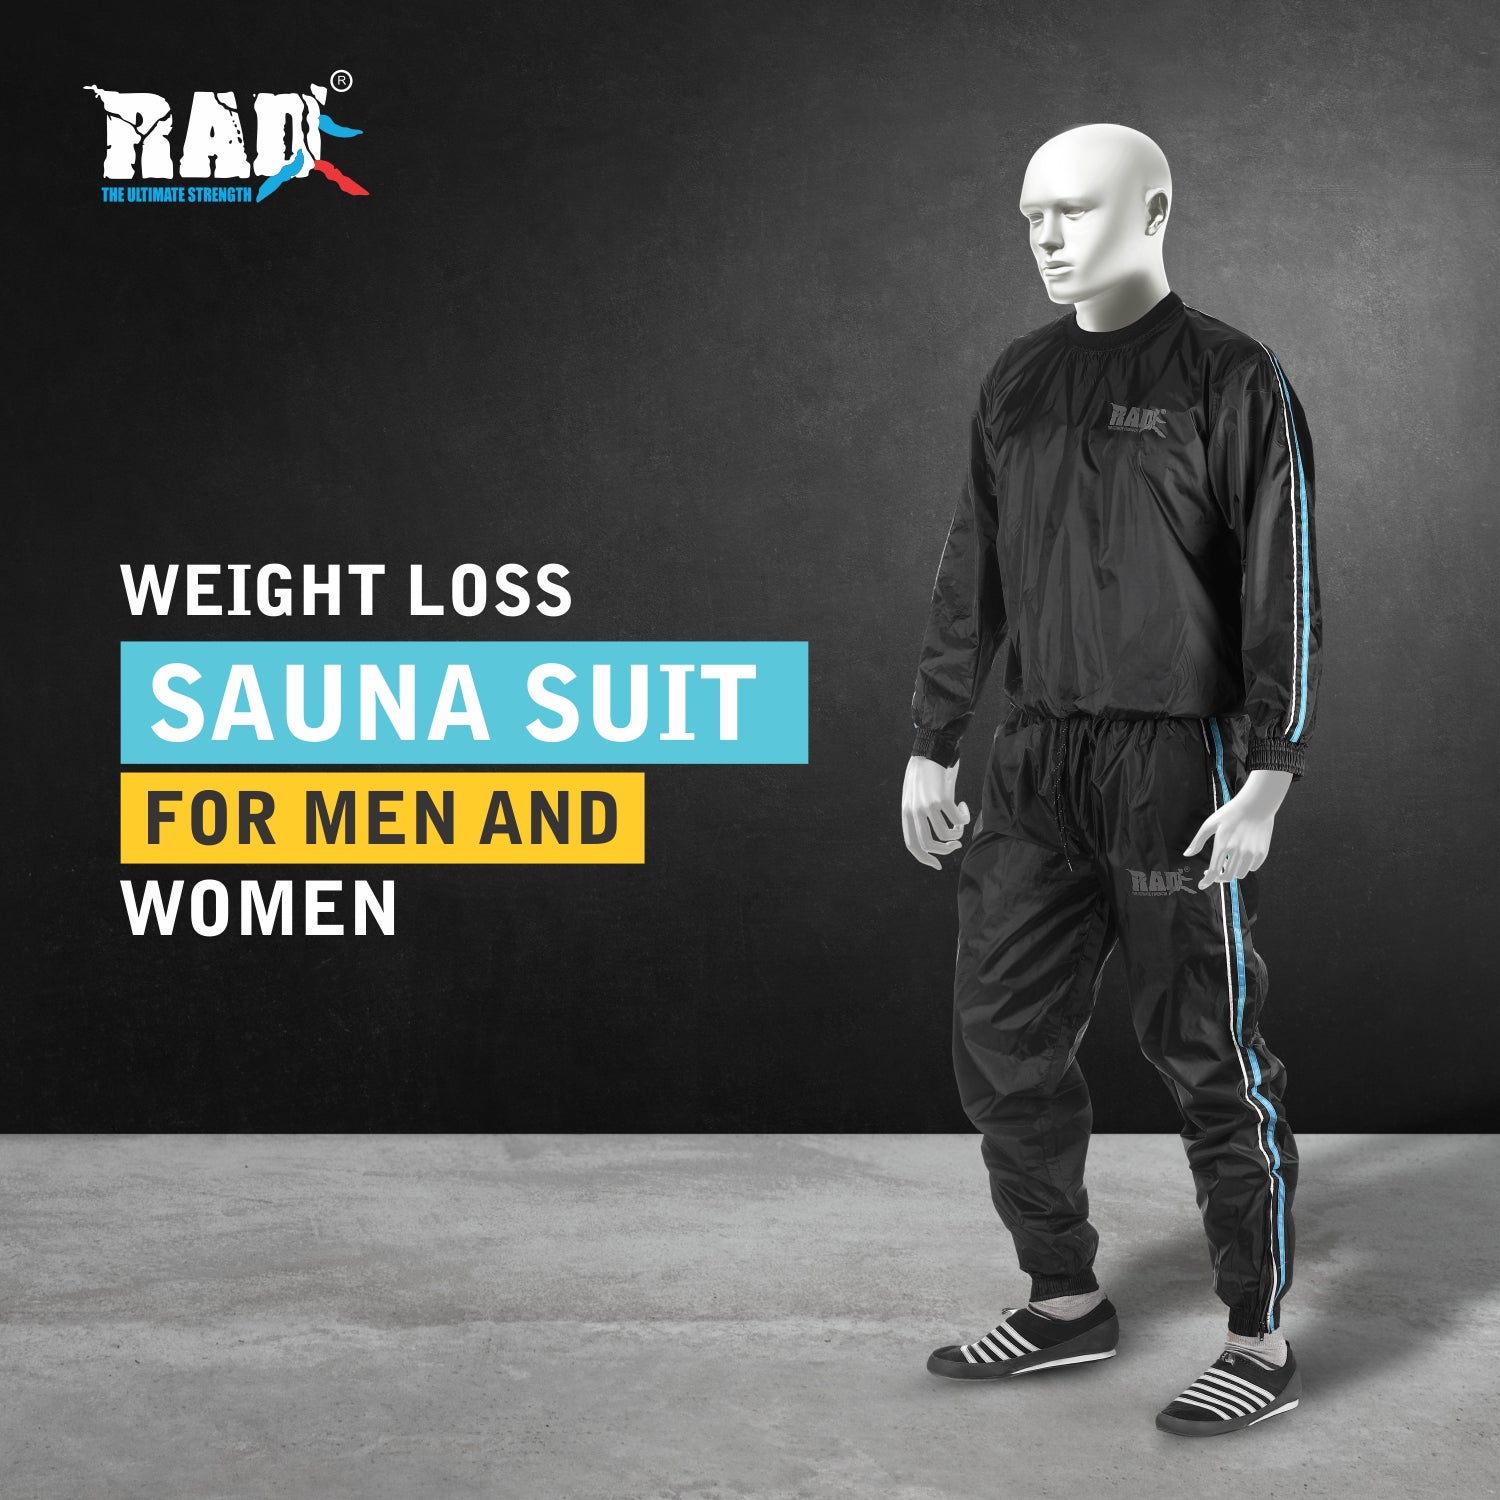 Sweat and Sauna Suits